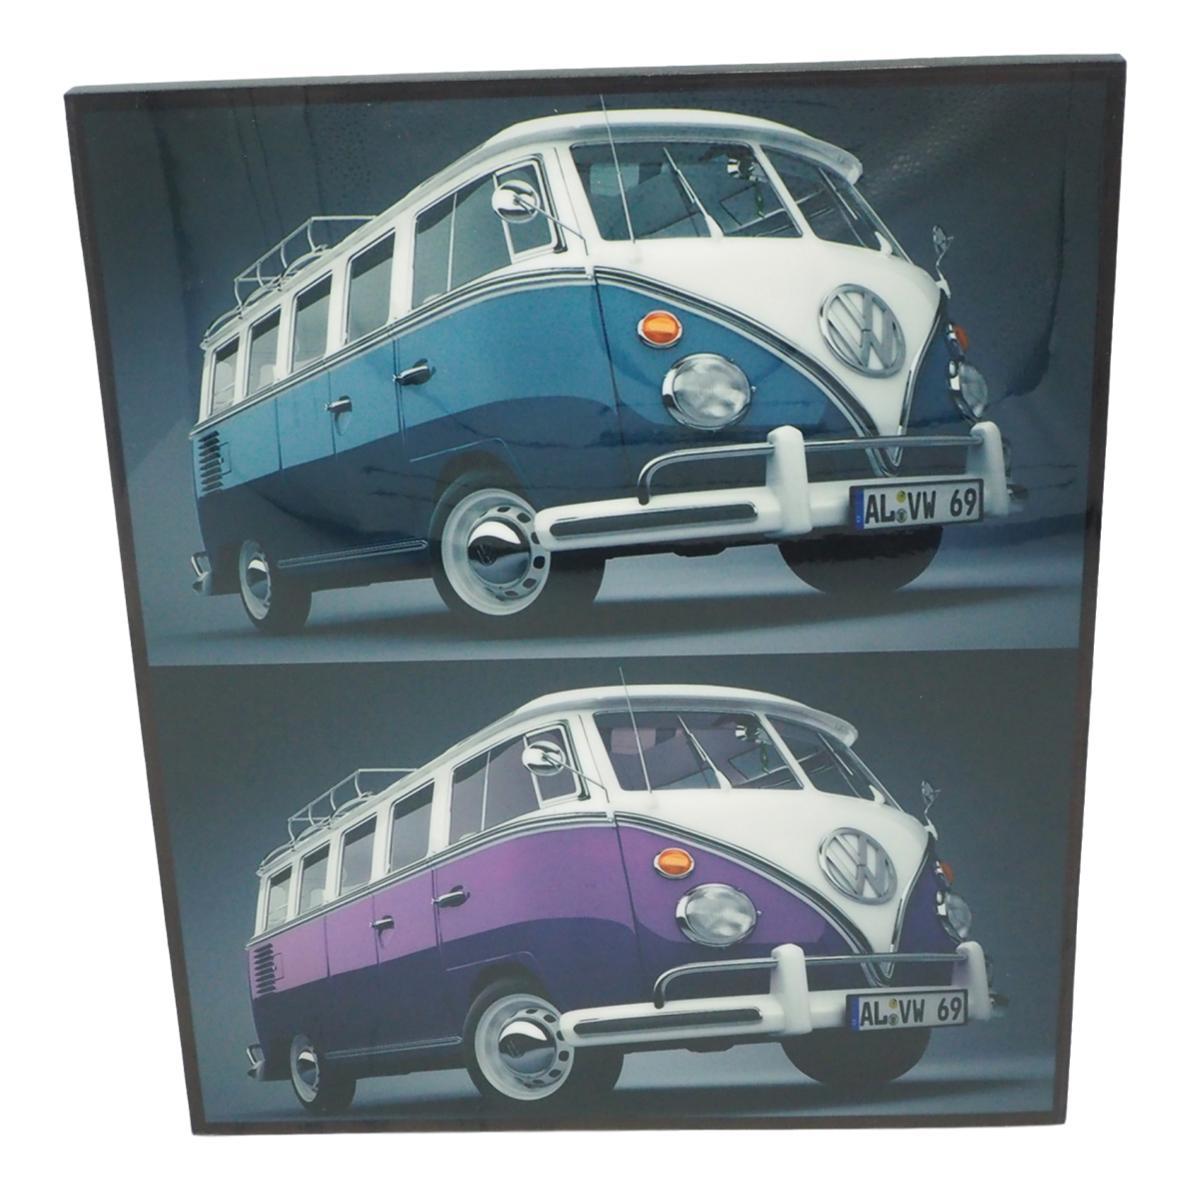  フォルクスワーゲン Volkswagen アートパネル 据え置き 壁掛けフック付き アーティスト POPパネル インテリア アートフレーム インテリアアートパネル ポップアートパネル ポスター クール 面白い かっこいい アート 雑貨 カフェ リビング 額付き 額縁 オシャレ